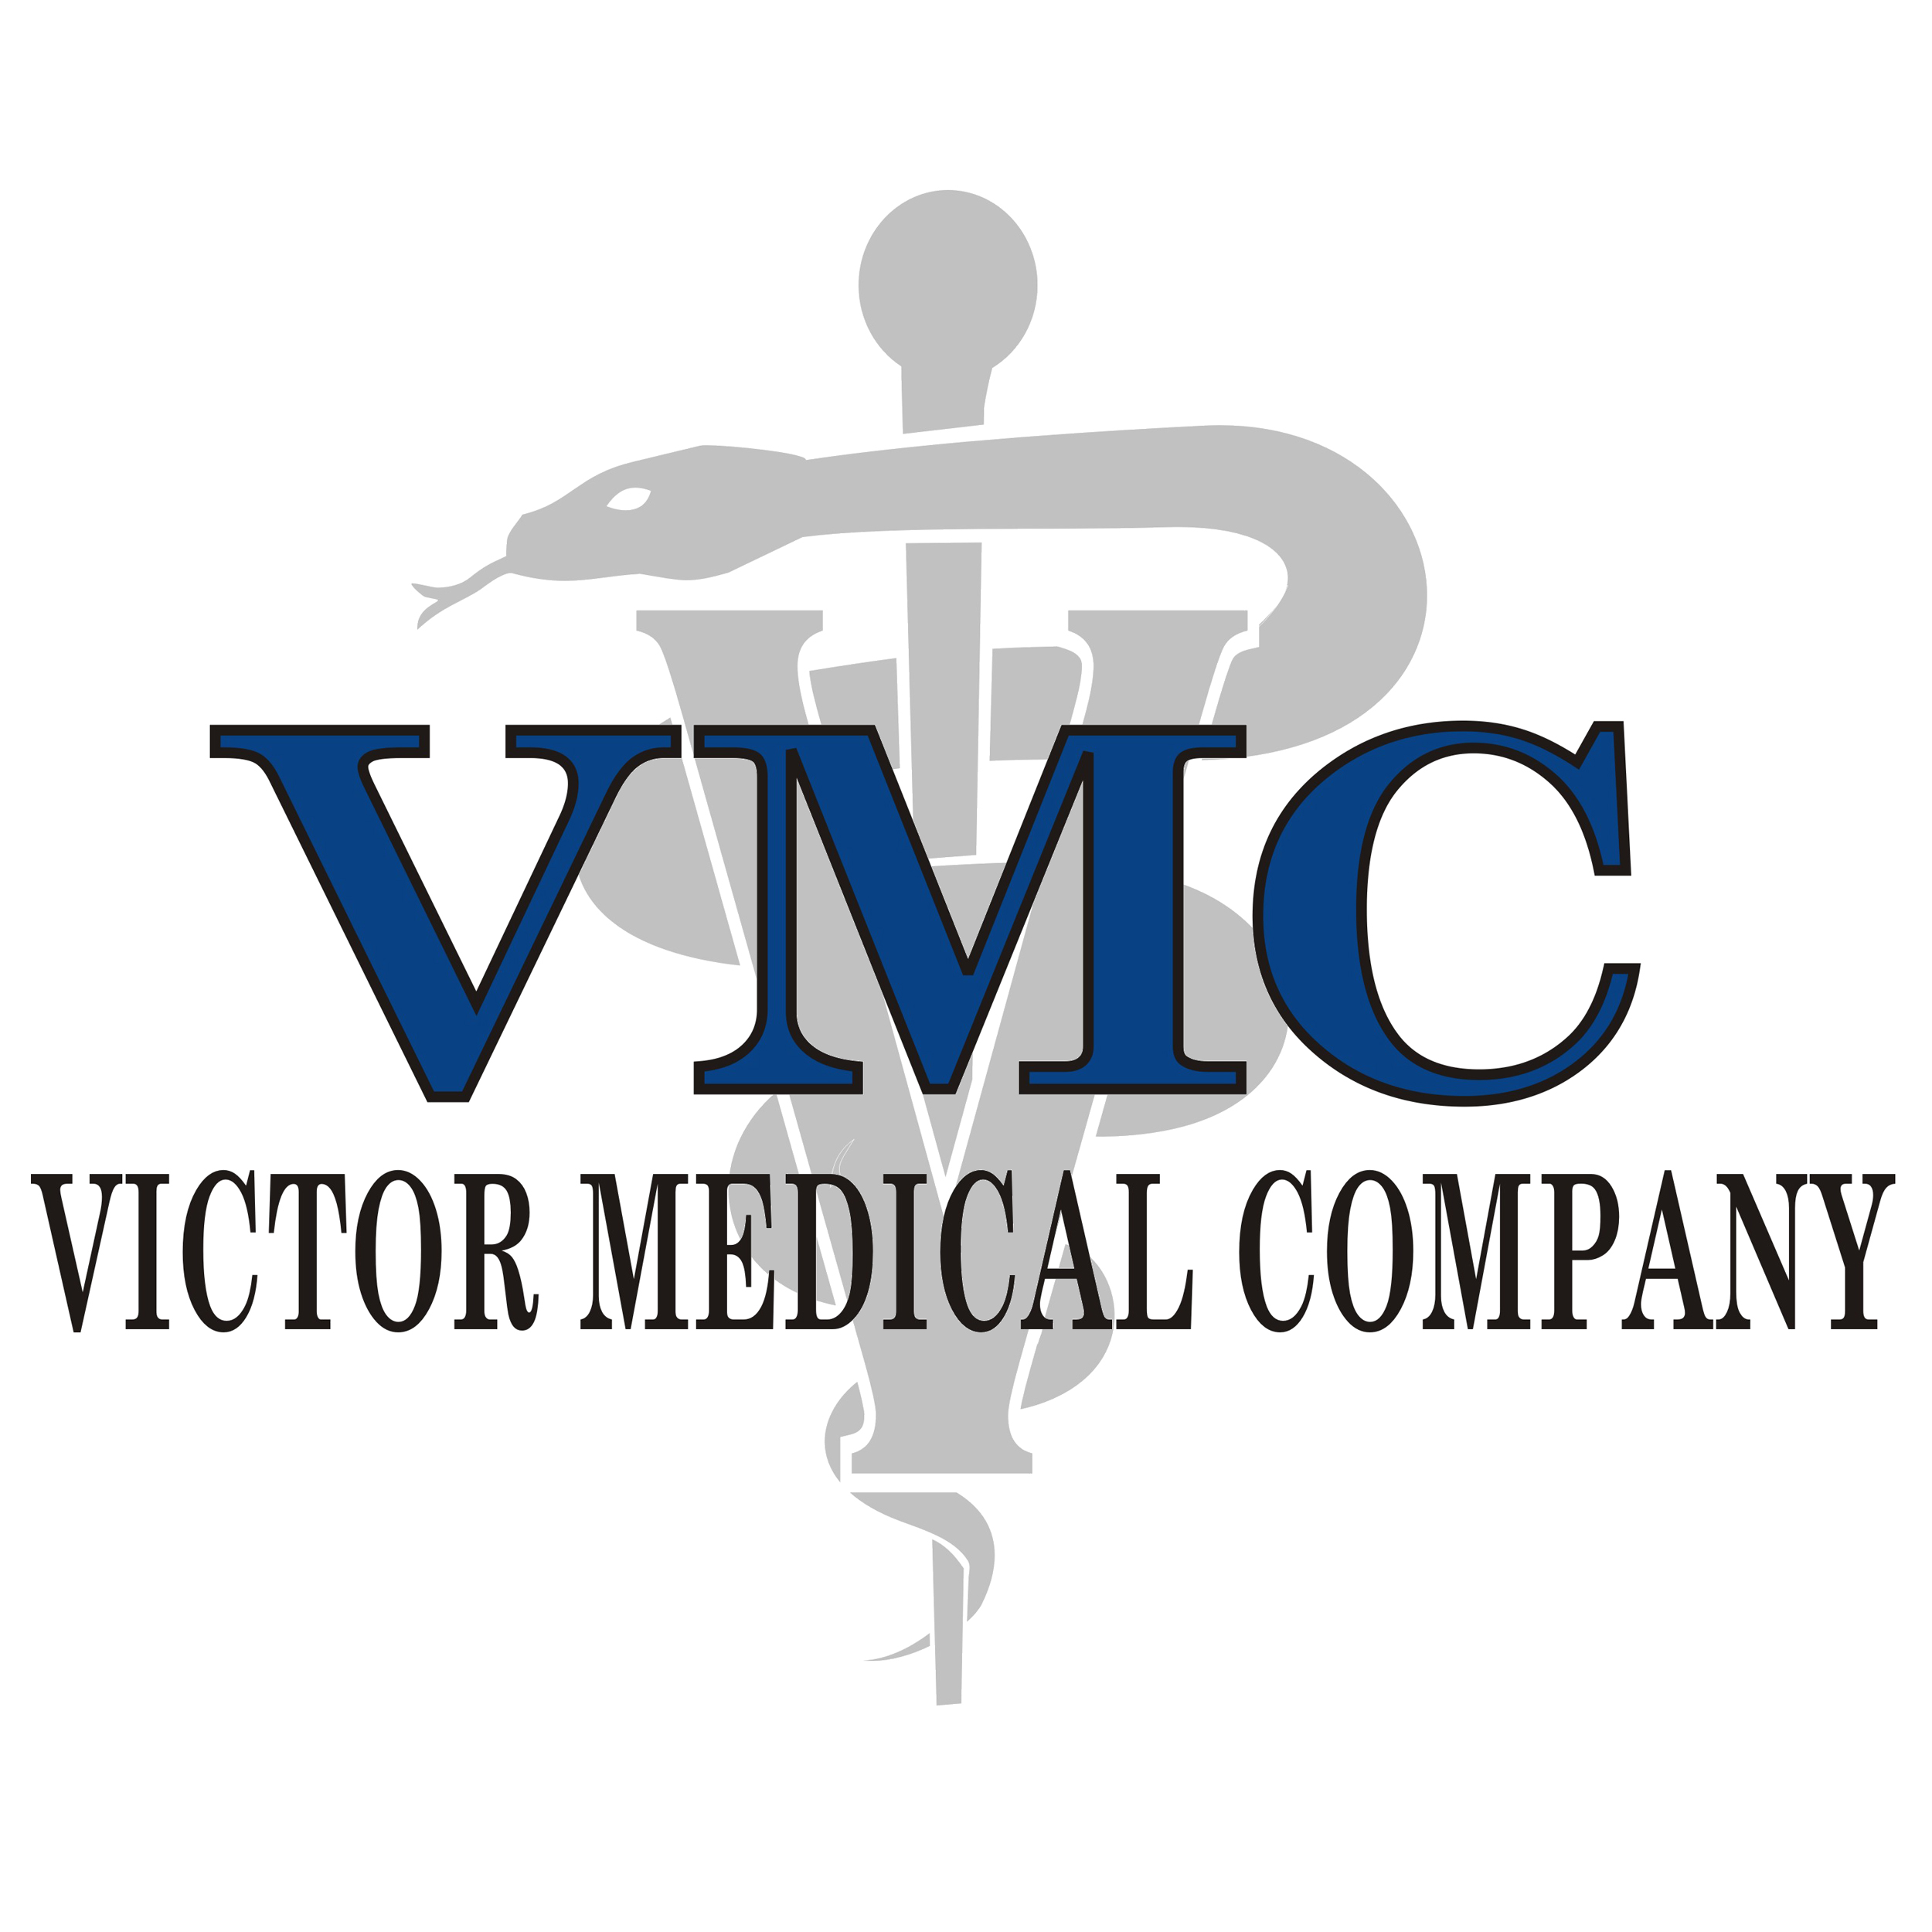 Victor Medical